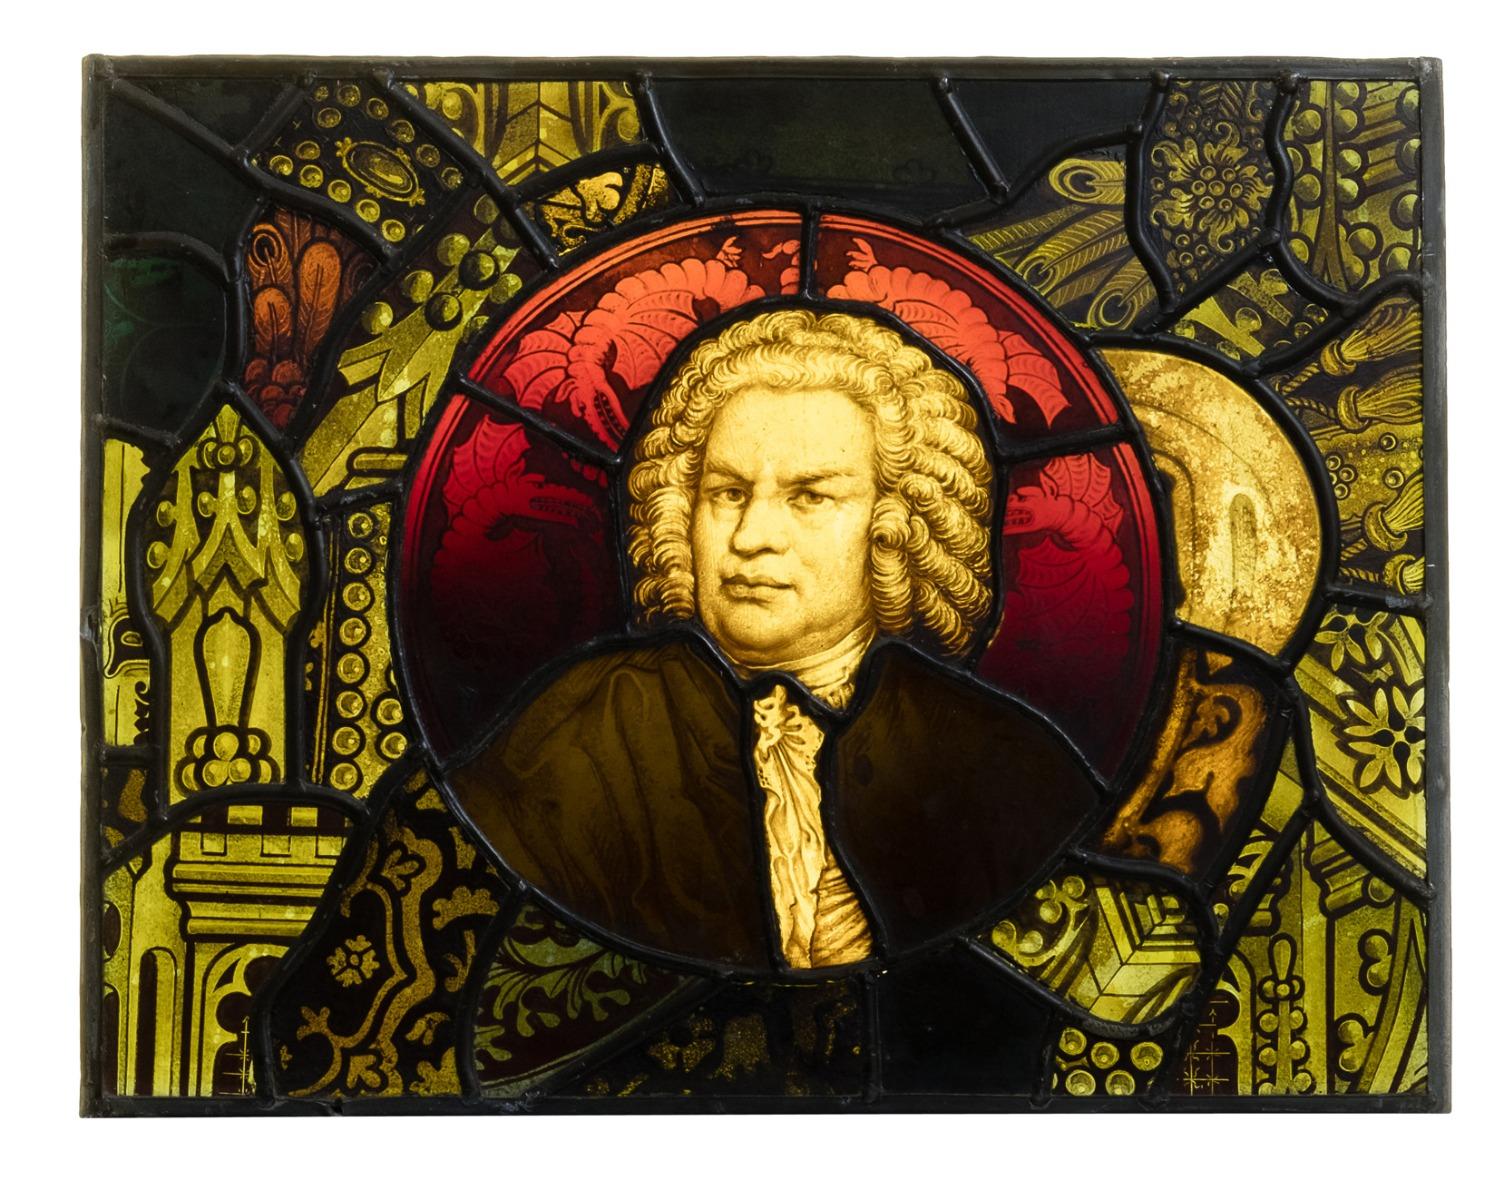 Un vitrail ancien représentant le compositeur J.S. Bach, en tenue d'époque.